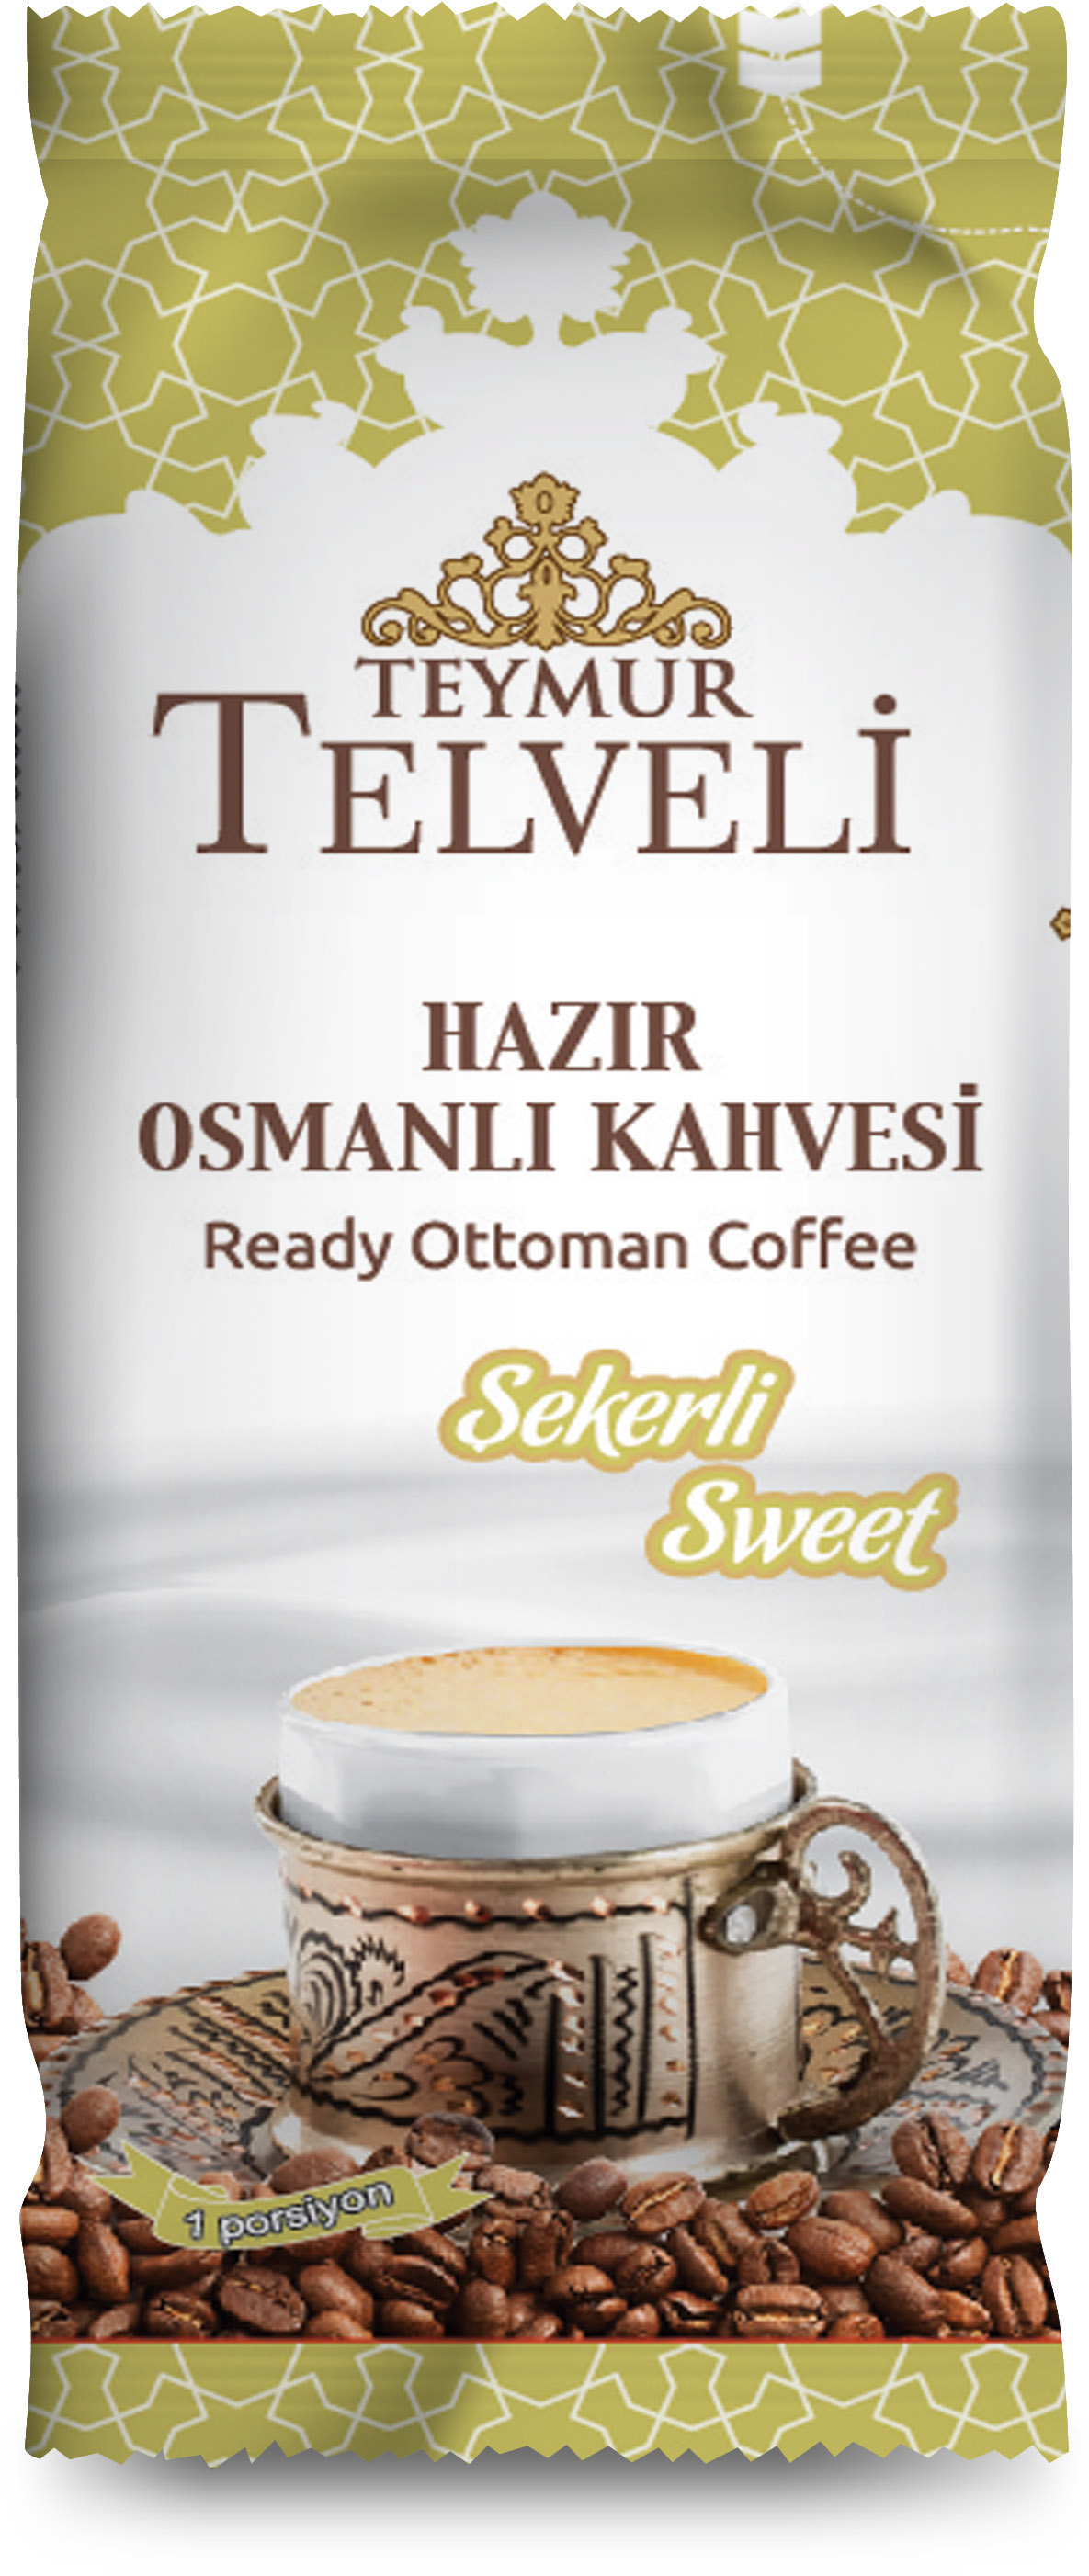 Teymur Telveli kahve sütlü köpüklü Coffee milk